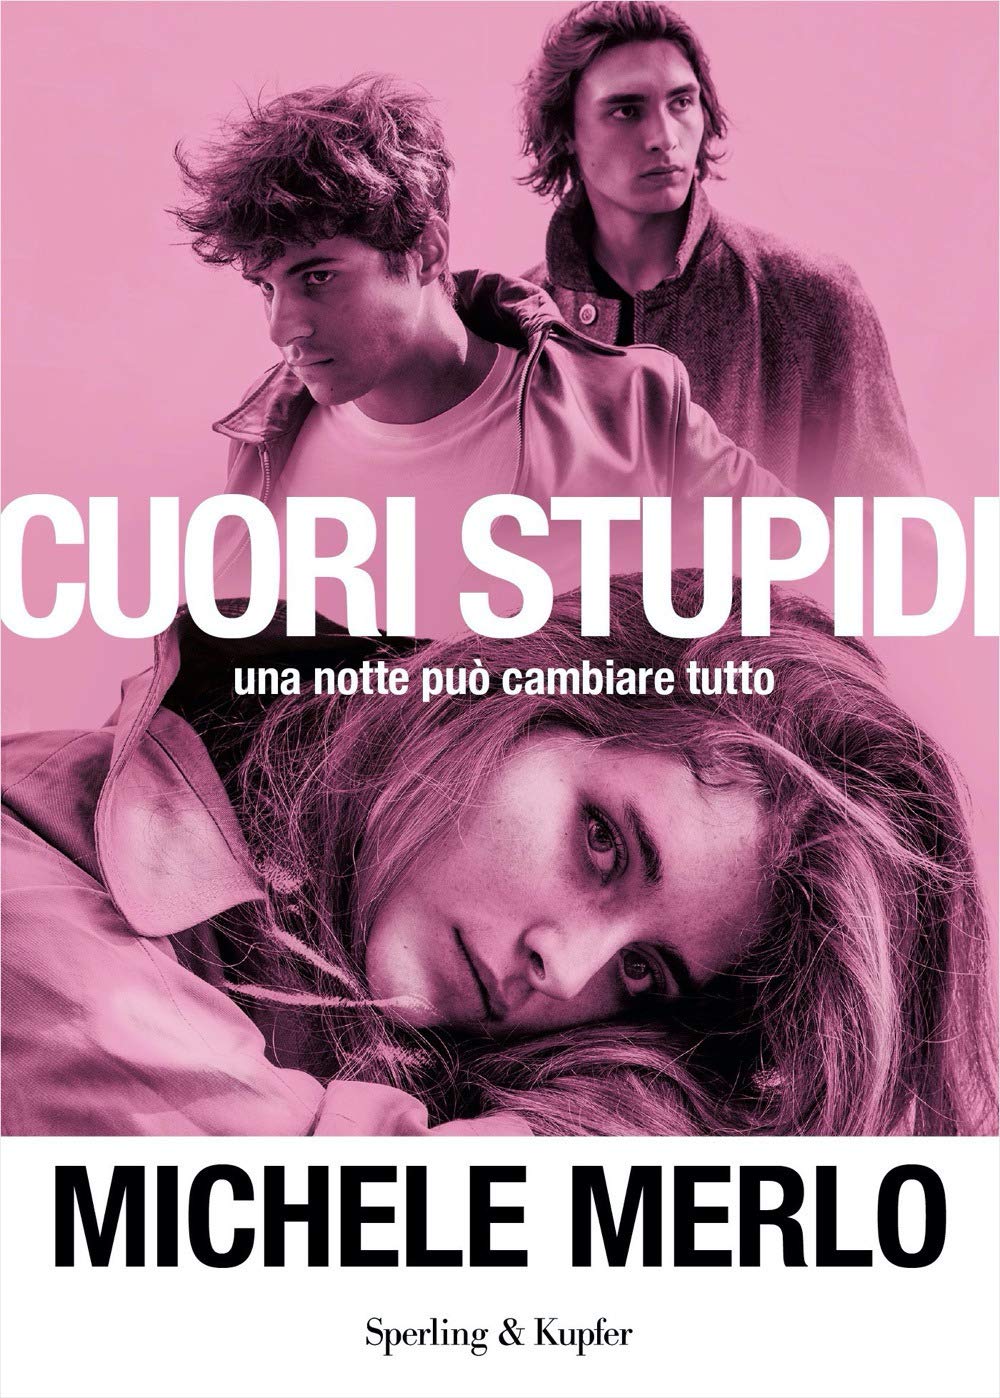 Michele Merlo album - immagini